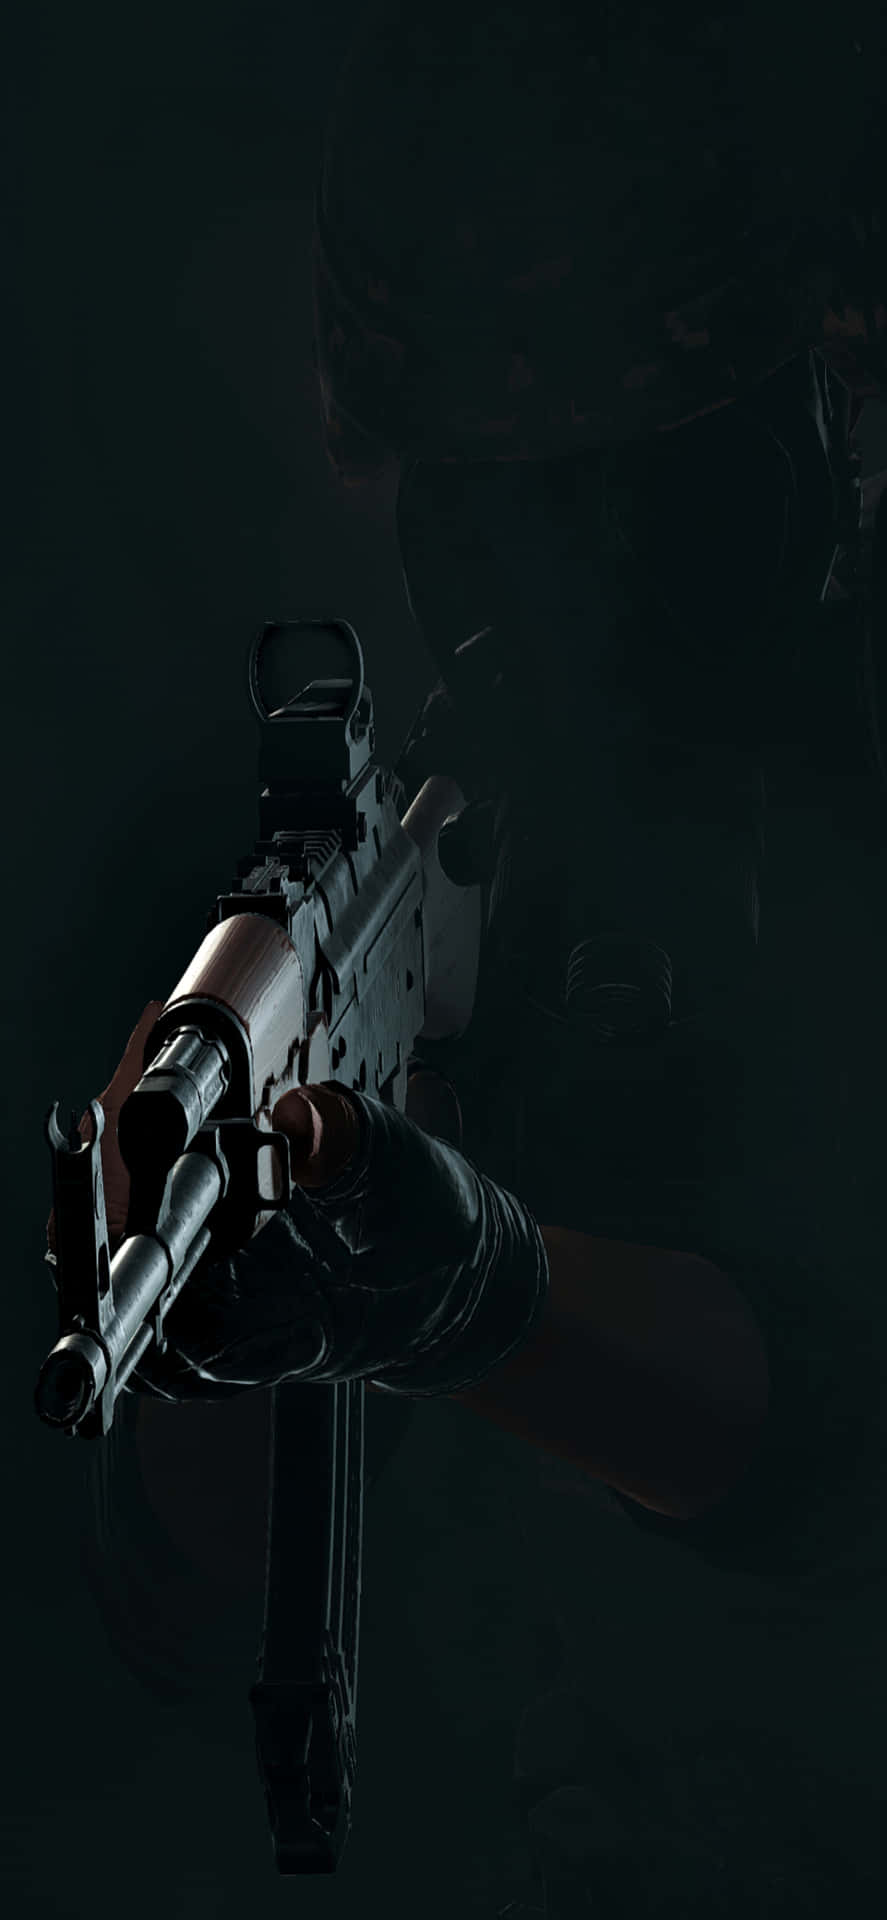 a soldier holding a gun in the dark